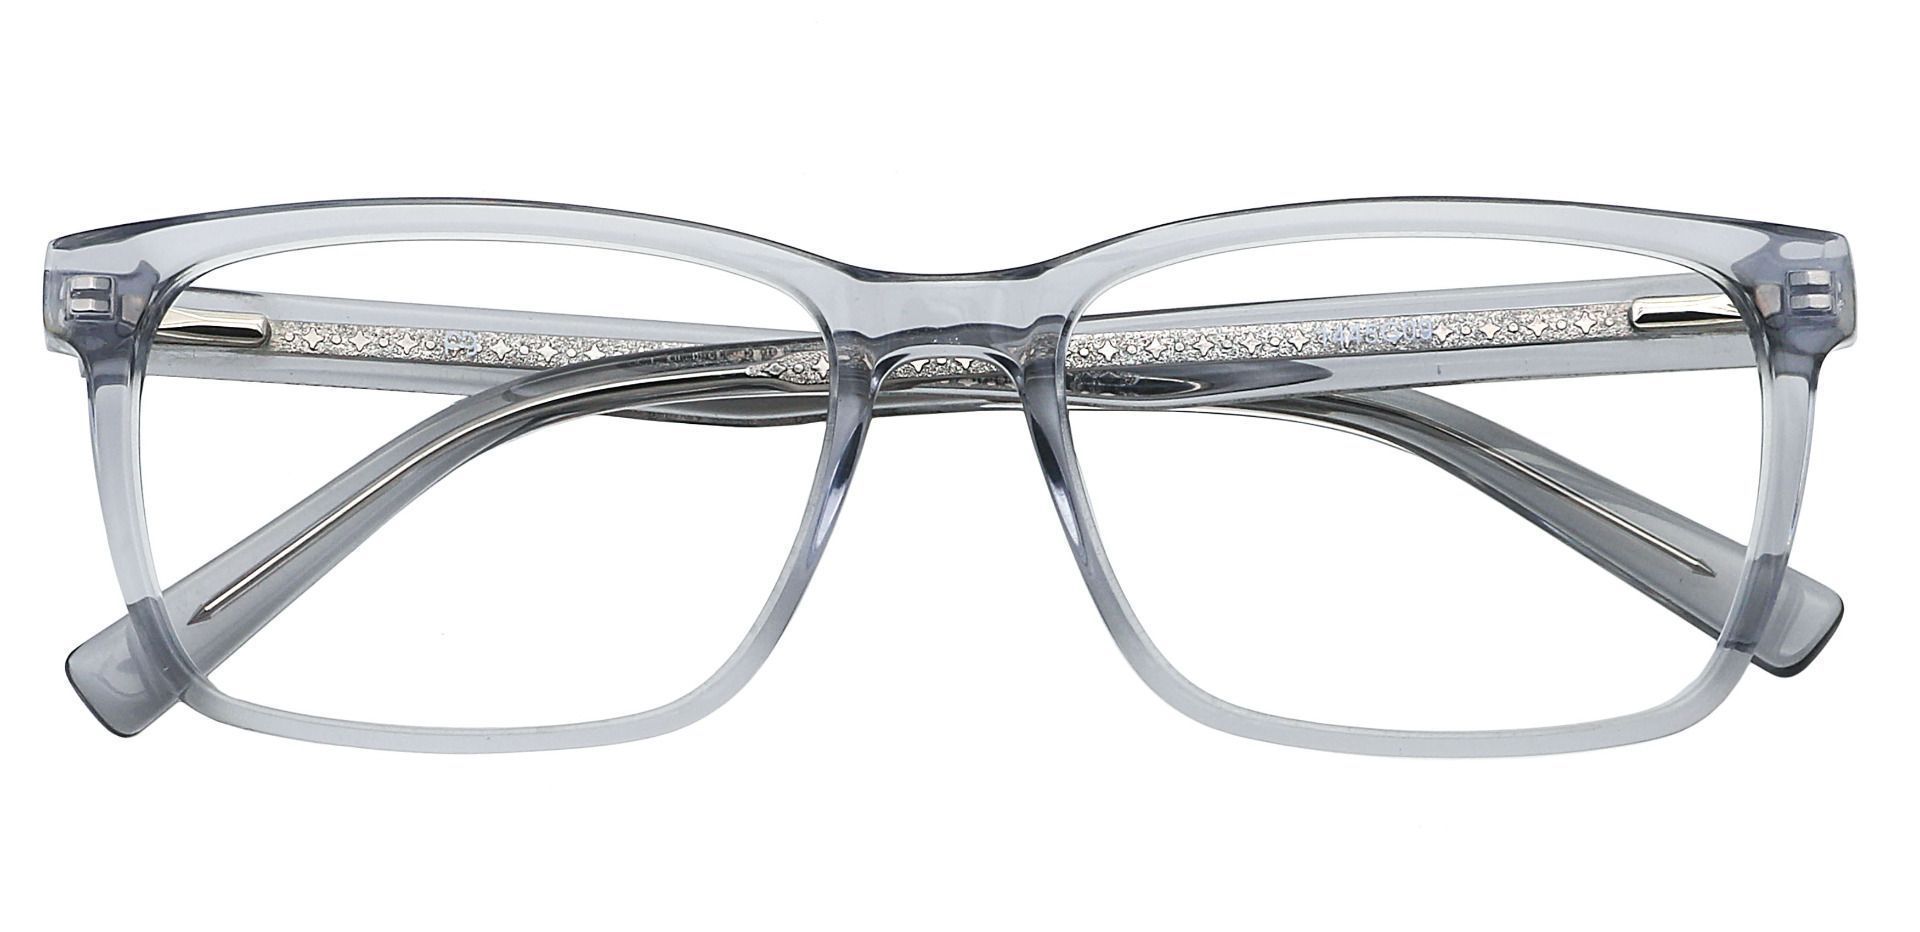 Galaxy Rectangle Non-Rx Glasses - Gray